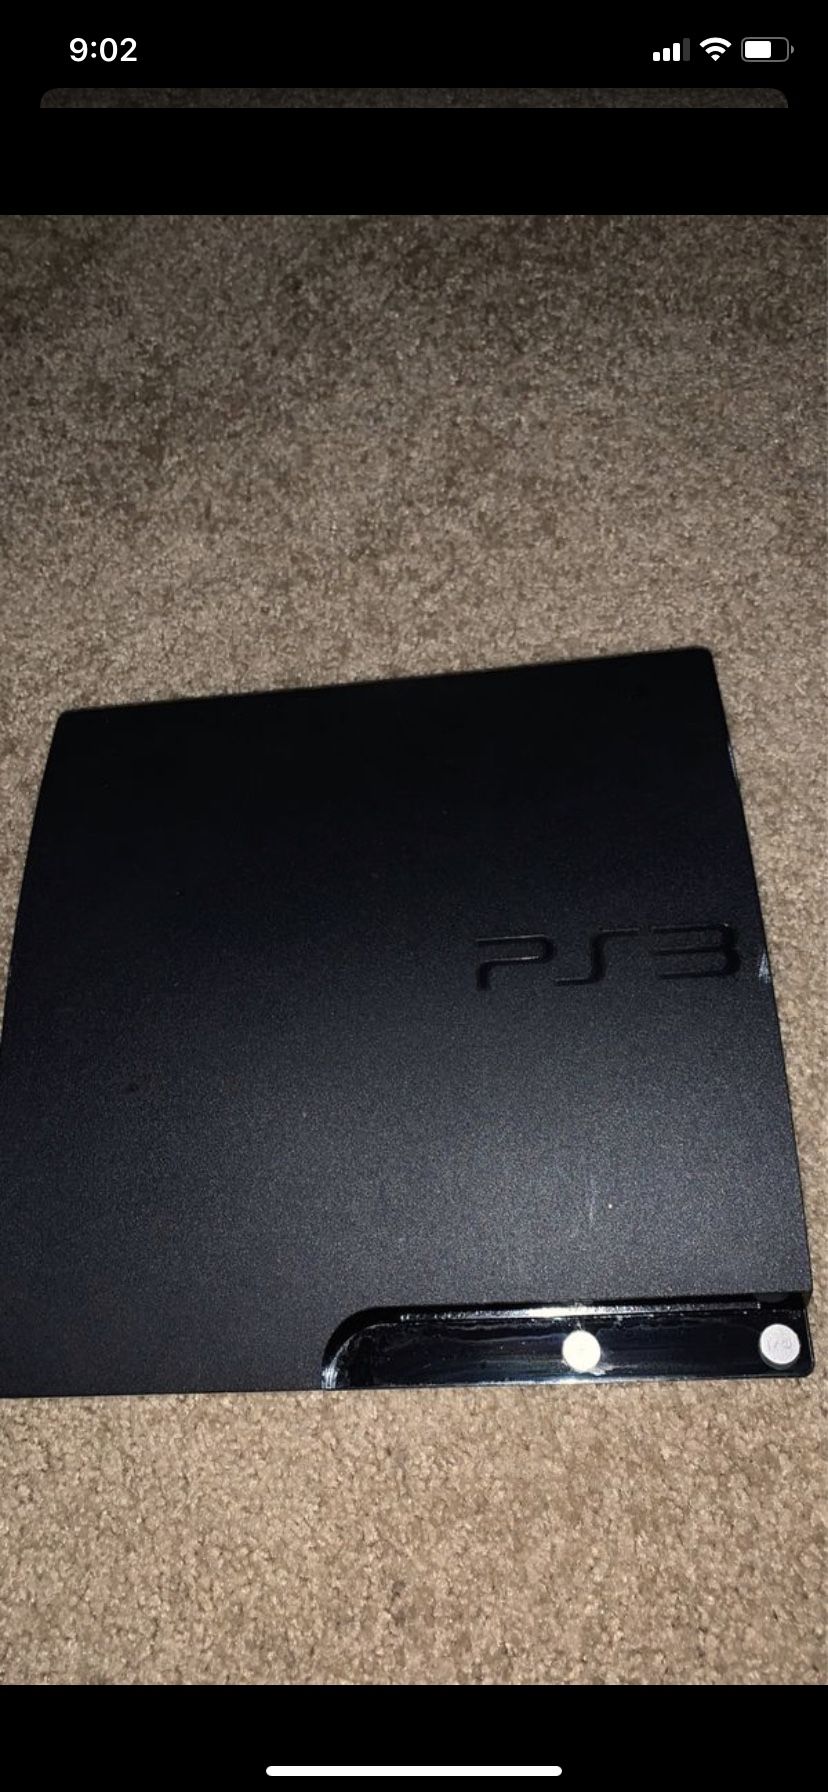 Playstation PS3 100$ OBO